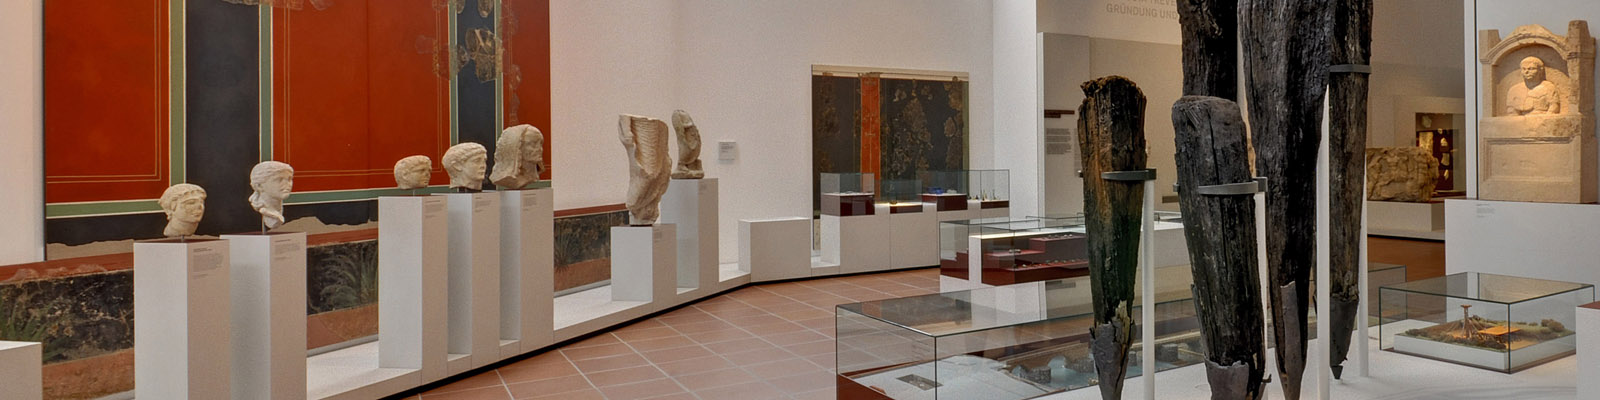 Ausstellungsraum im Rheinische Landesmuseum Trier